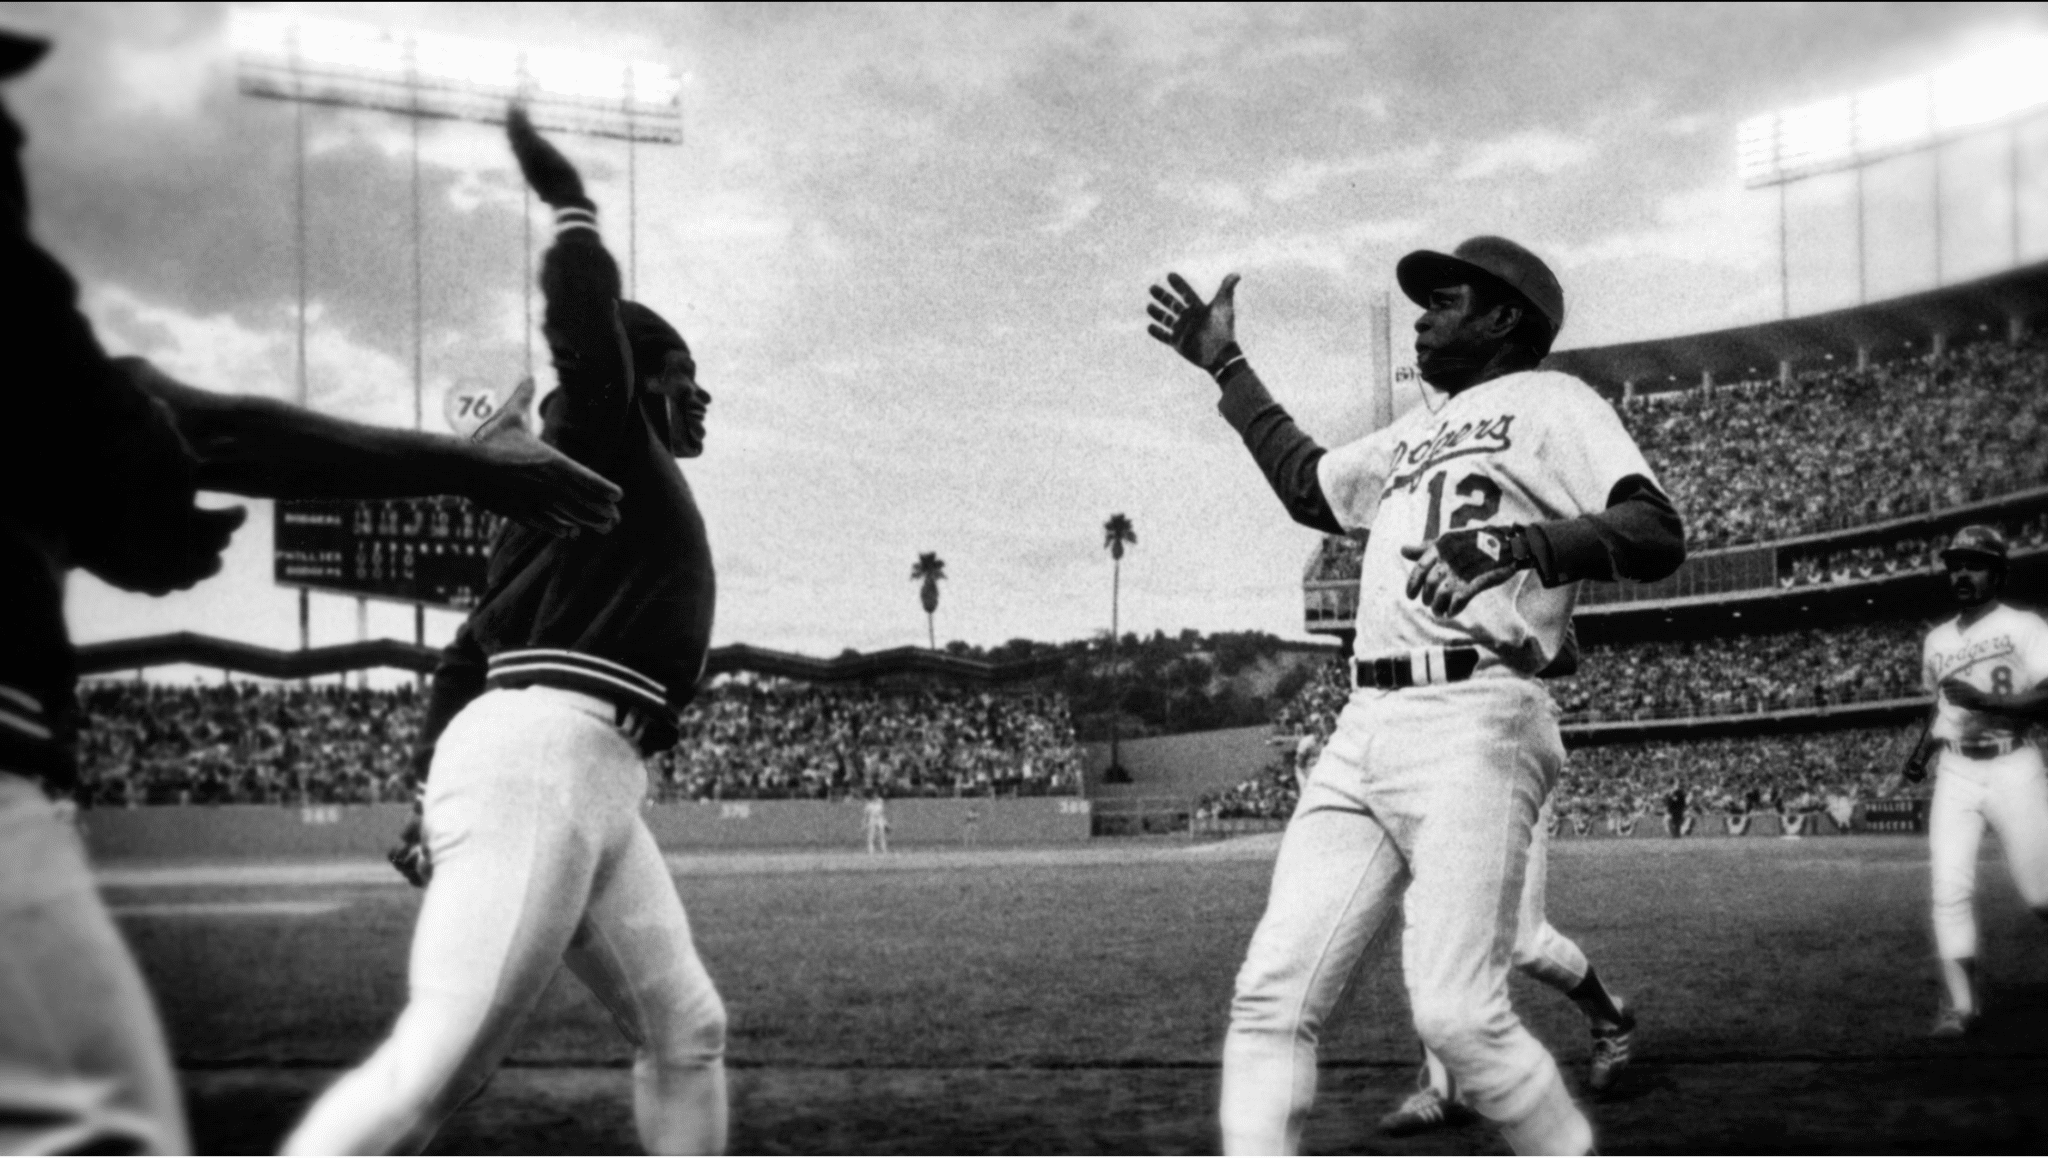 El primer choque de cinco de Dusty Baker y Glenn Burke del equipo de béisbol
Los Angeles Dodgers el 2 de octubre de 1977